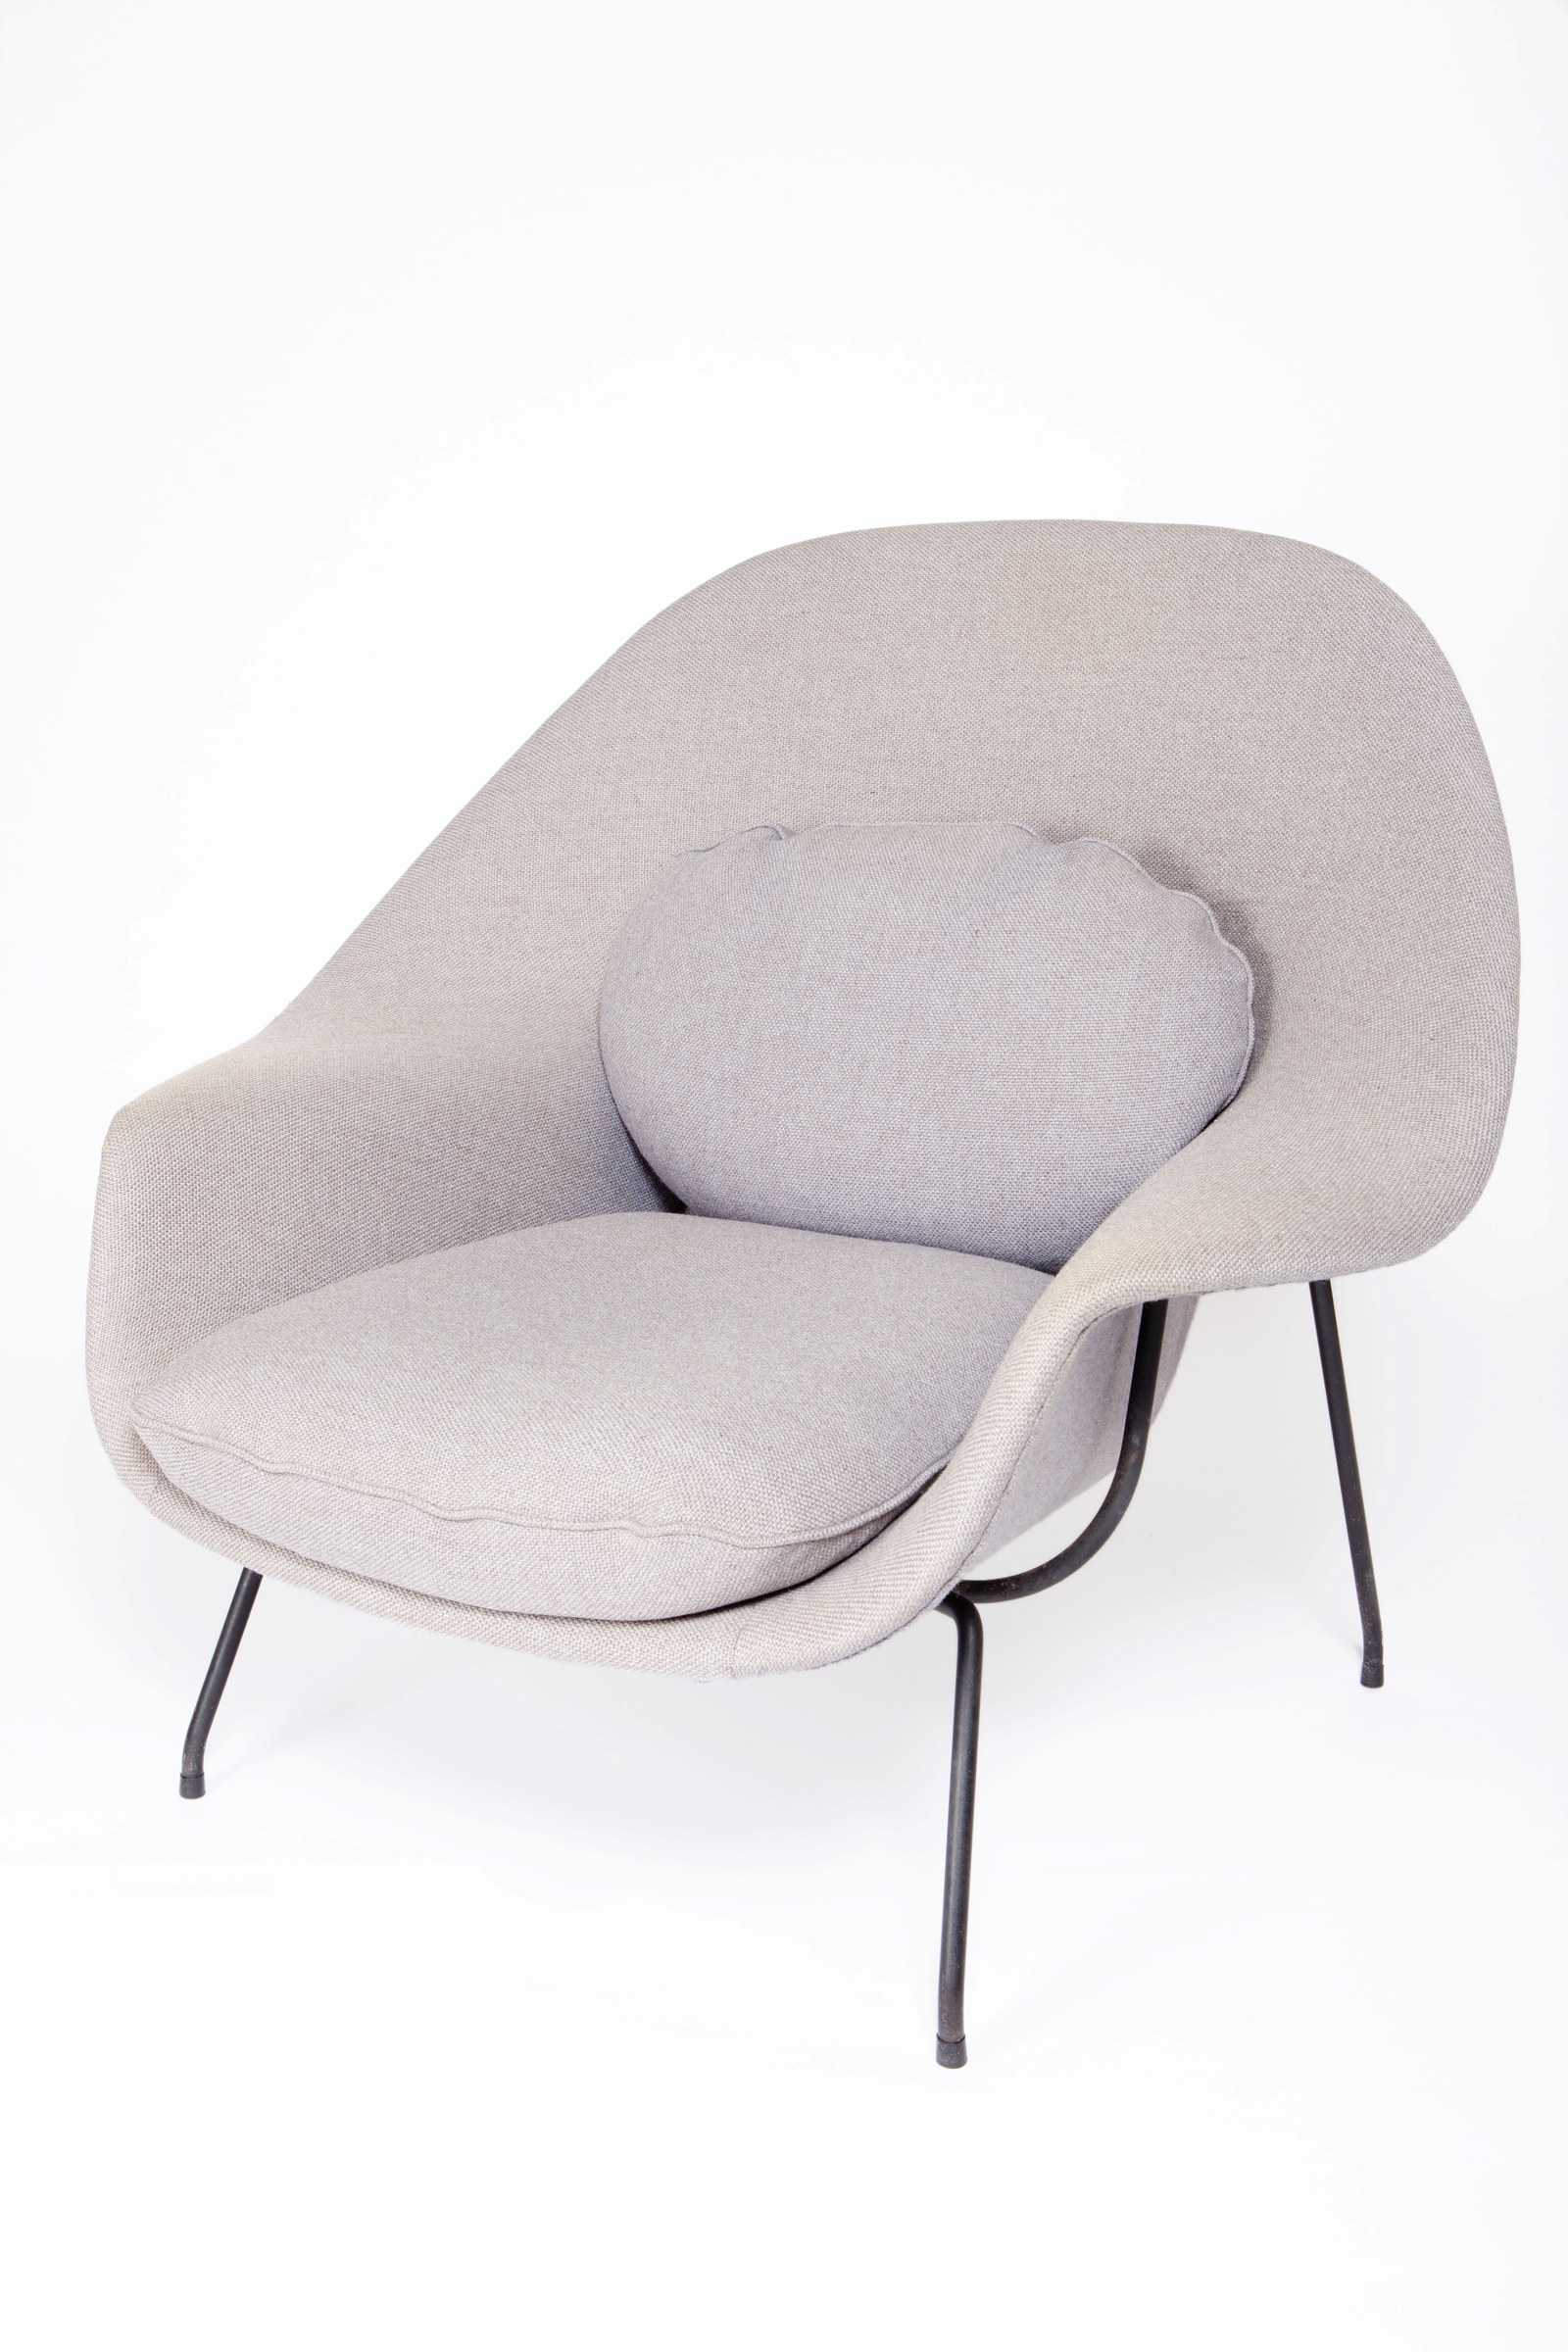 Chair, Womb design by Eero Saarinen, c1948